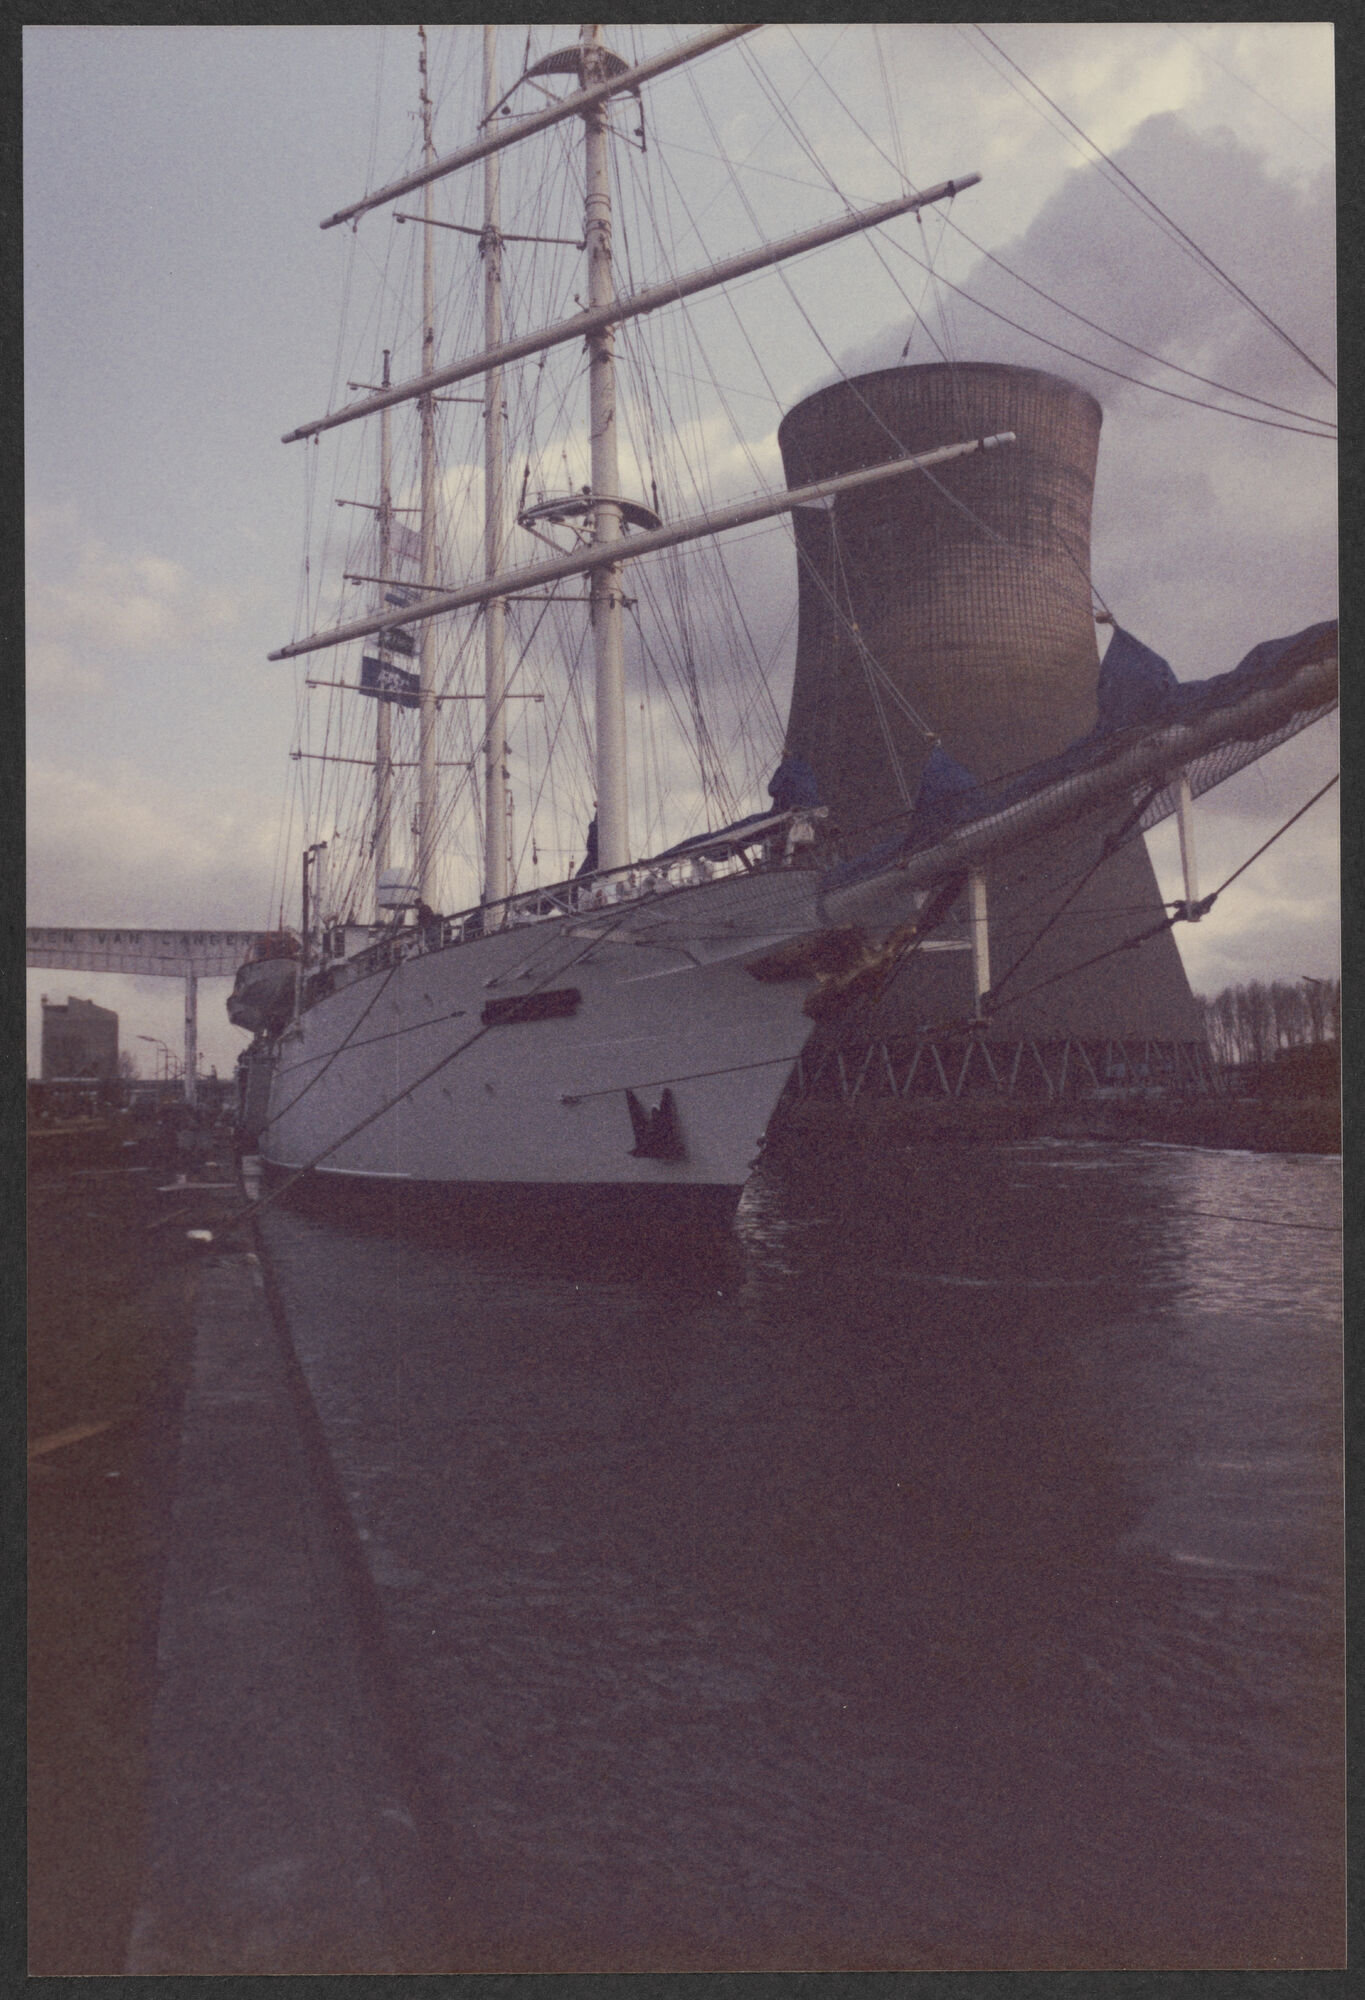 Zeilschip Star Clipper aan de kade bij Scheepswerven Langerbrugge in Gent